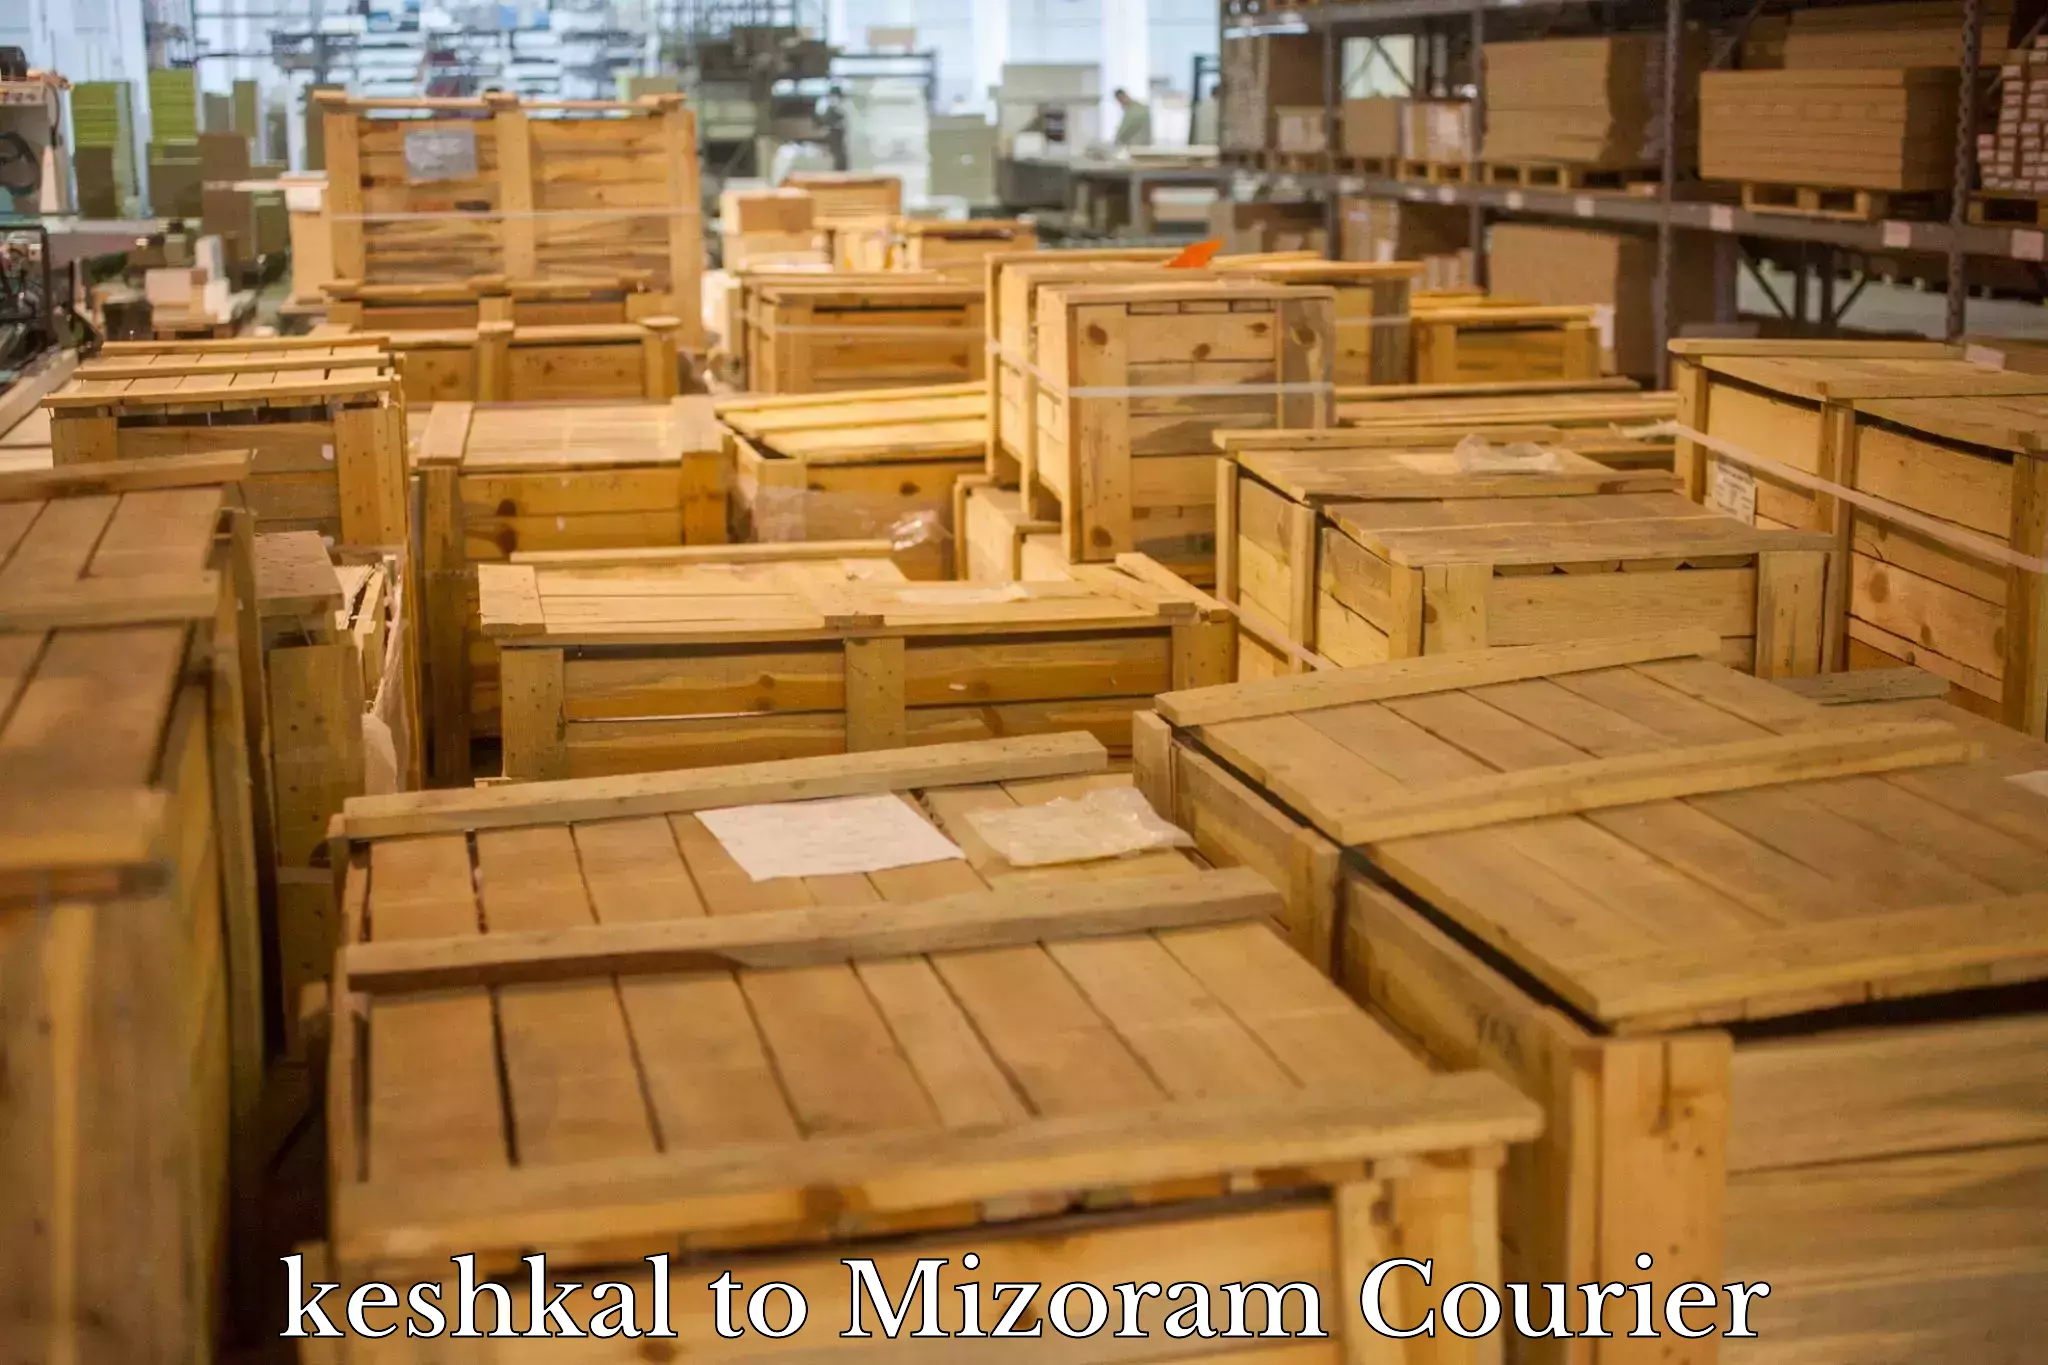 E-commerce fulfillment keshkal to Mizoram